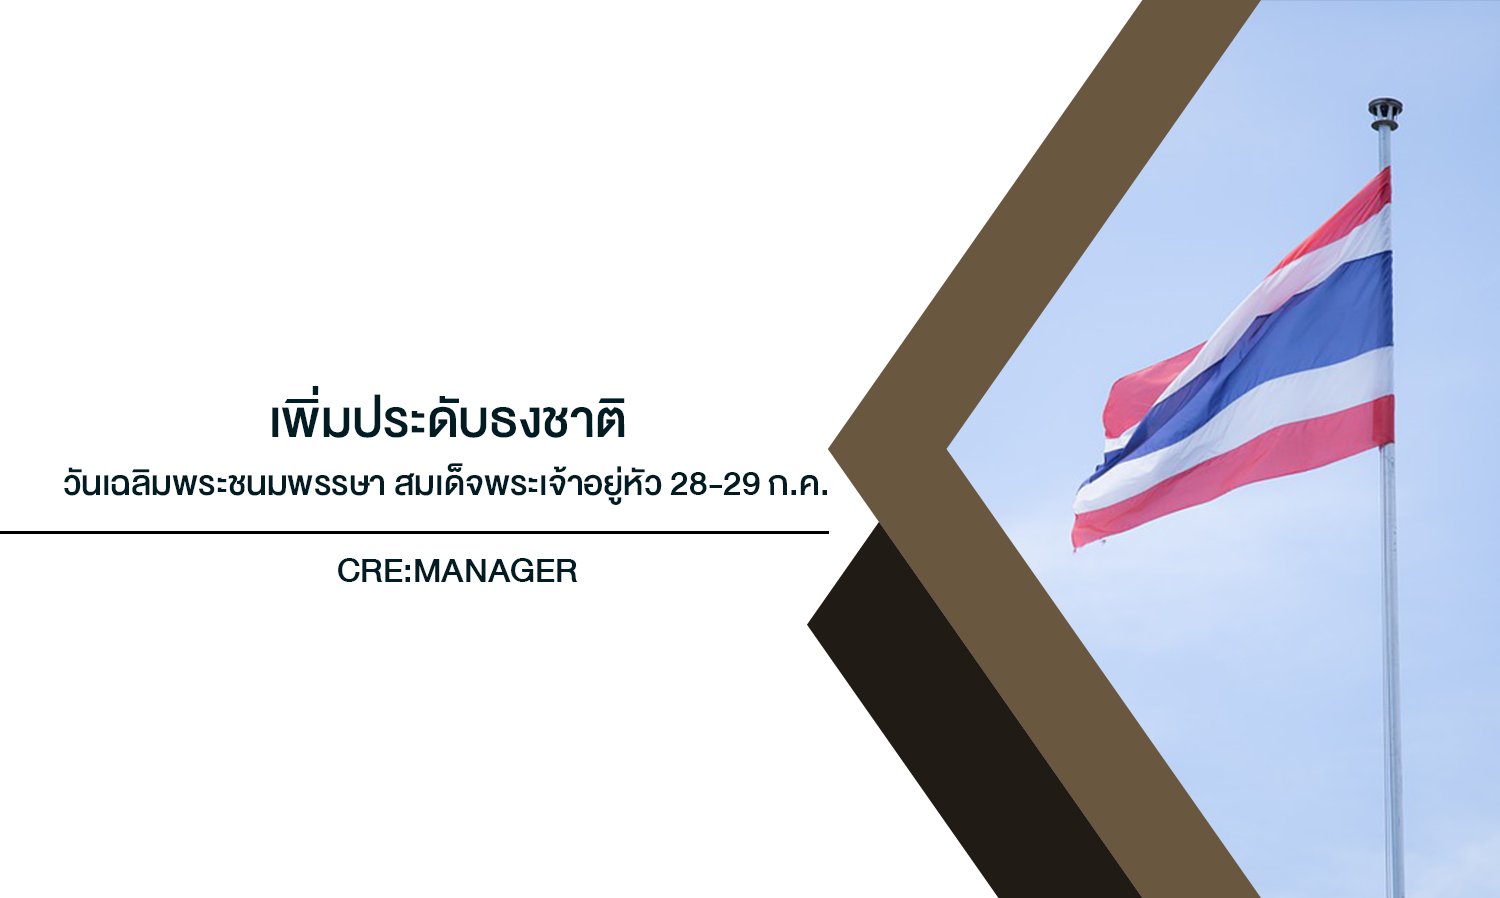  เพิ่มประดับธงชาติ วันเฉลิมพระชนมพรรษา สมเด็จพระเจ้าอยู่หัว 28-29 ก.ค. และวันพระราชทานธงชาติไทย